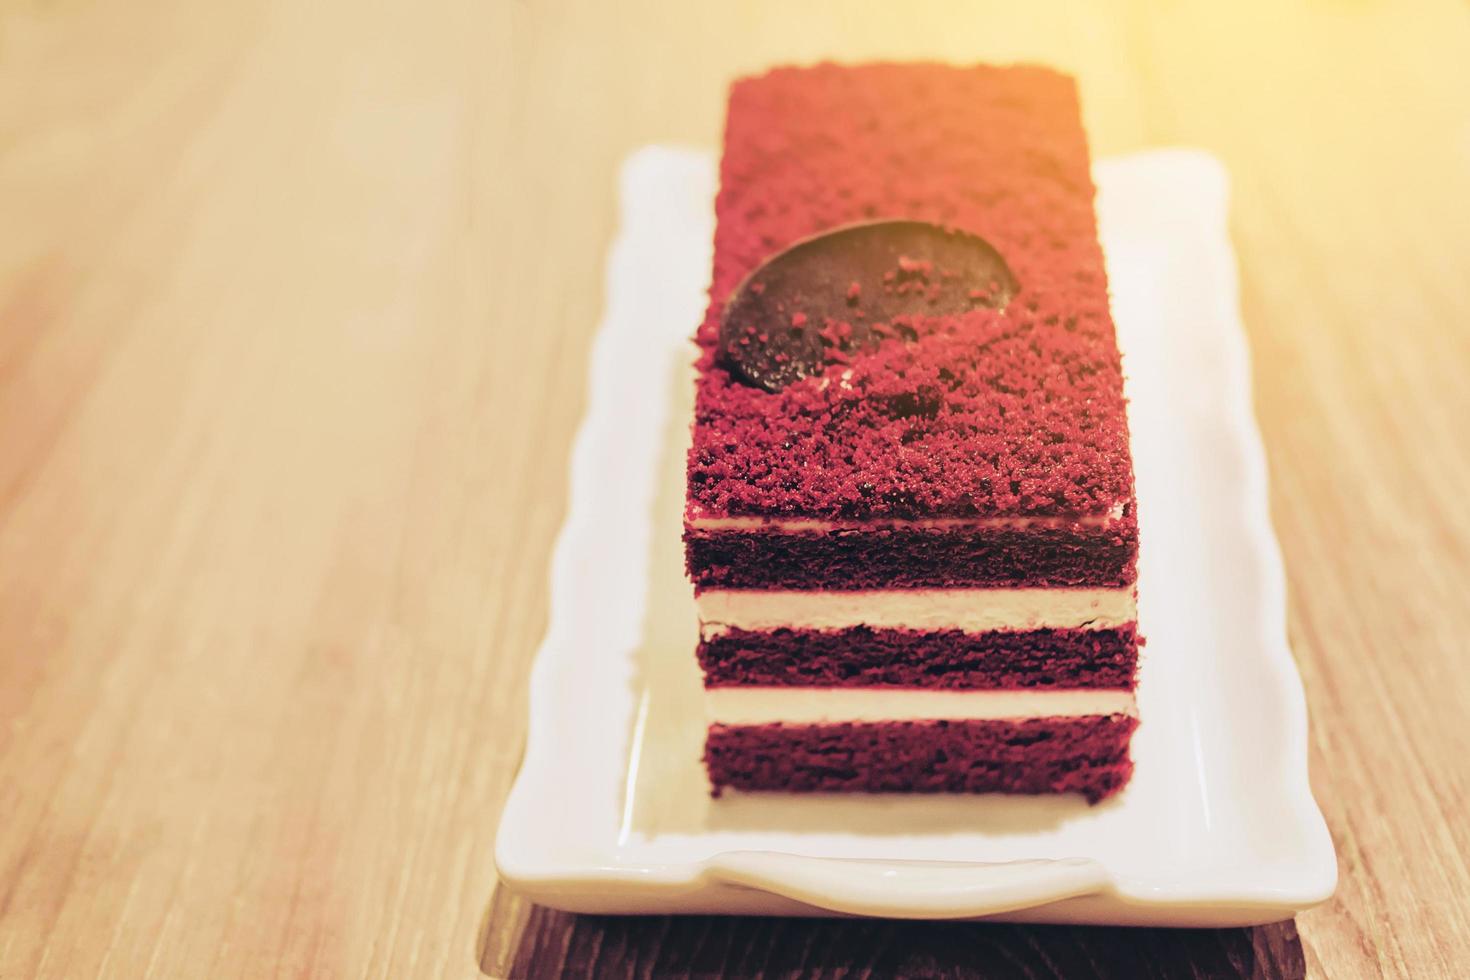 Red velvet cake on wooden table photo